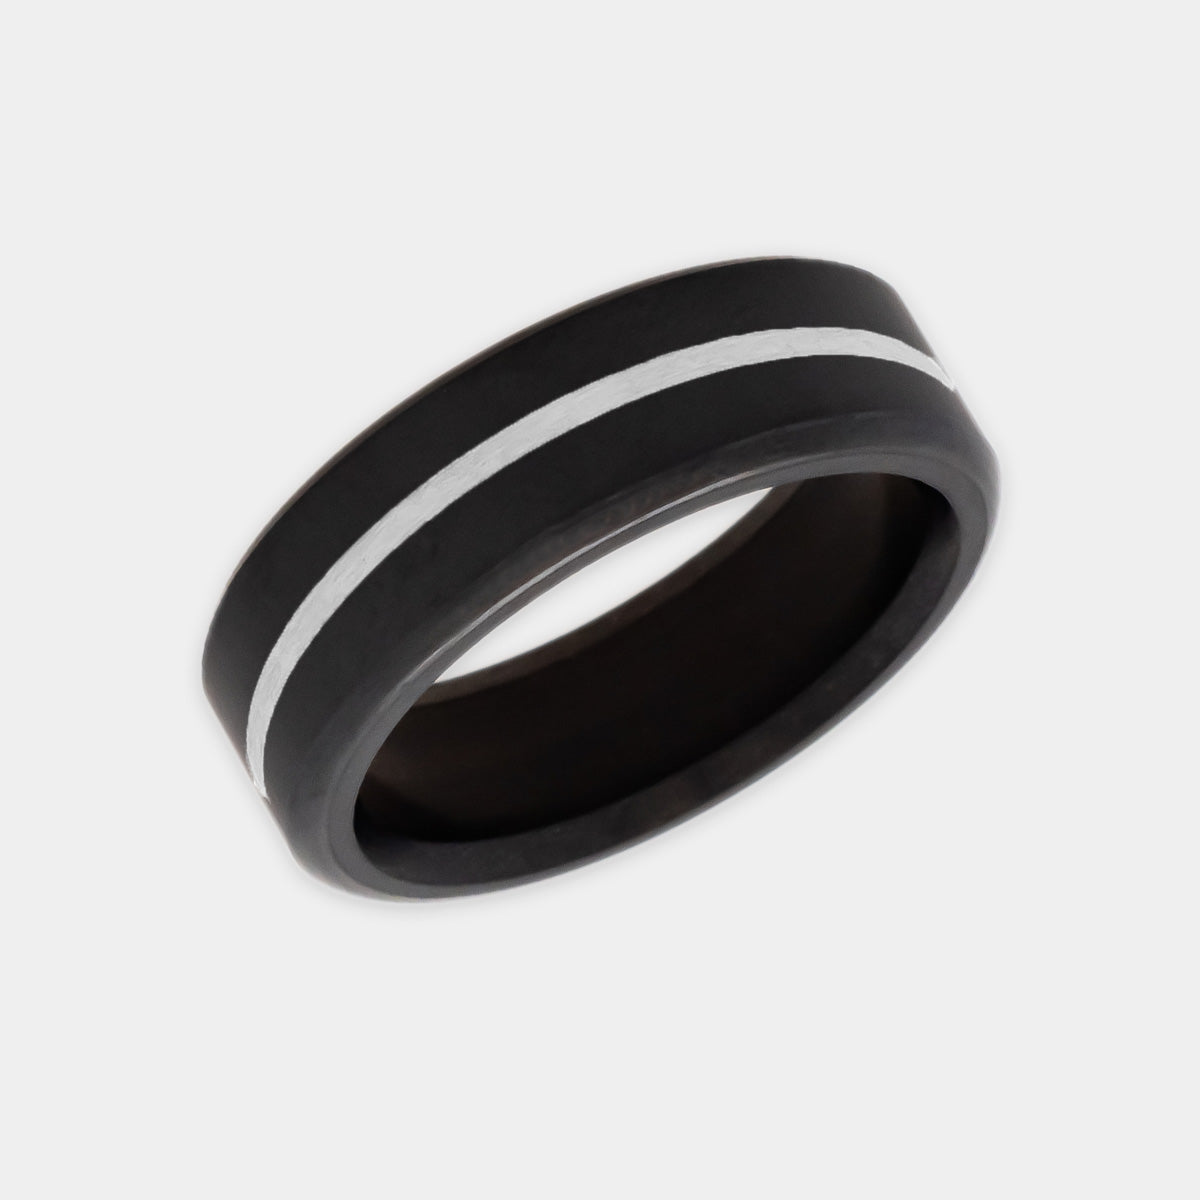 Black Diamond - Men’s Ring 7mm - Silver Inlay - KRATOS - Elysium Black Diamond